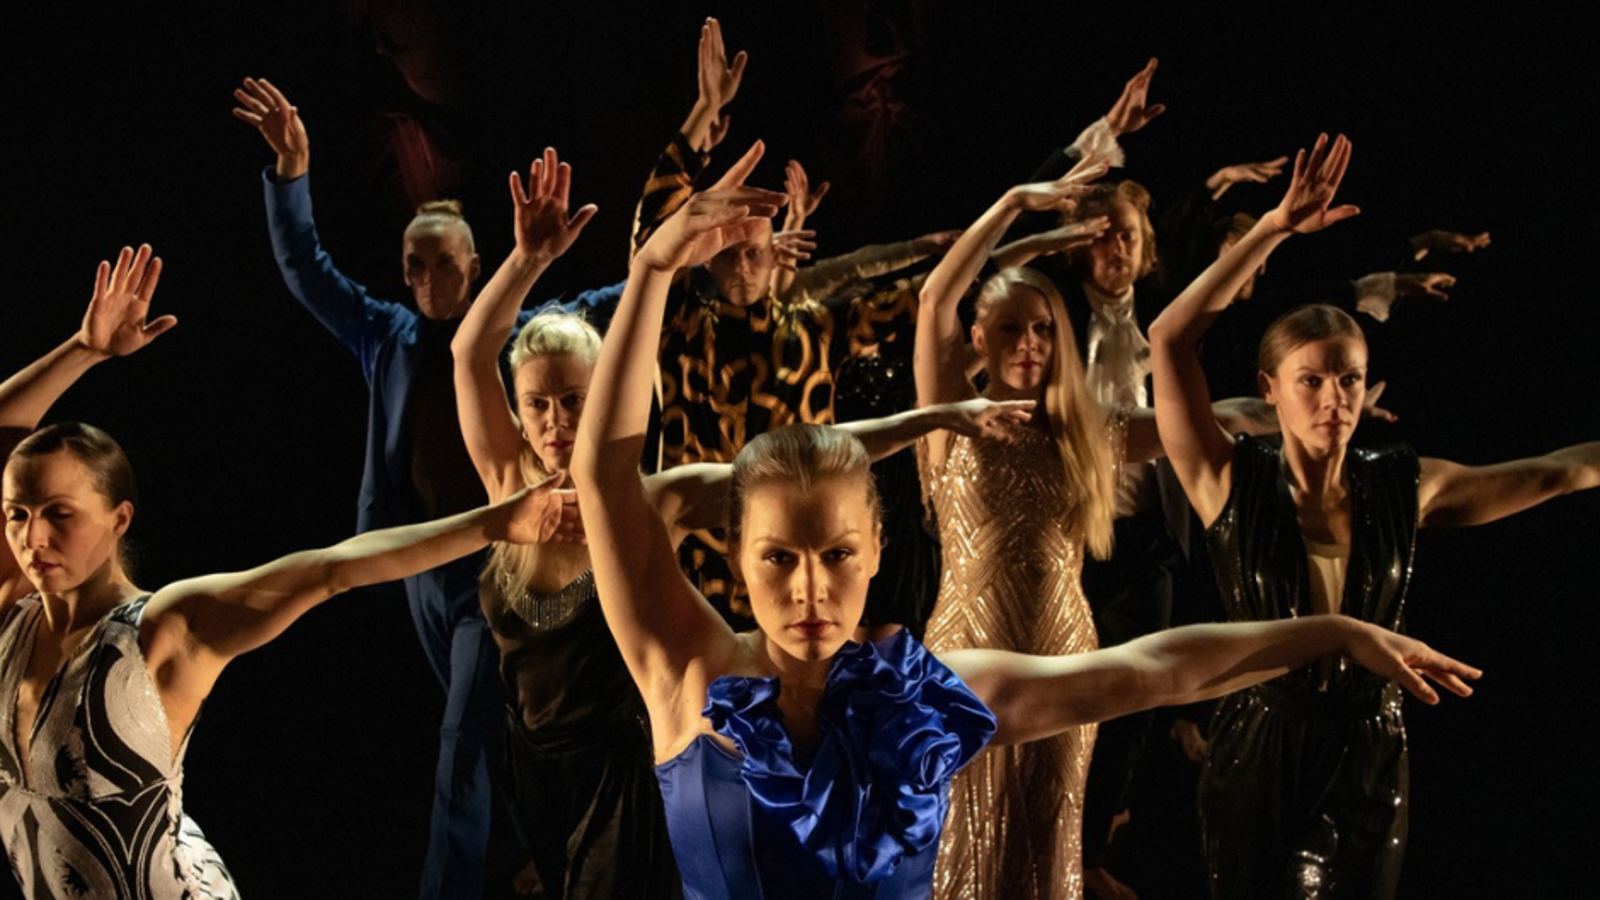 Kuvassa on joukko tanssijoita kädet ylhäällä ja edessä on tanssija sinisessä puvussa.